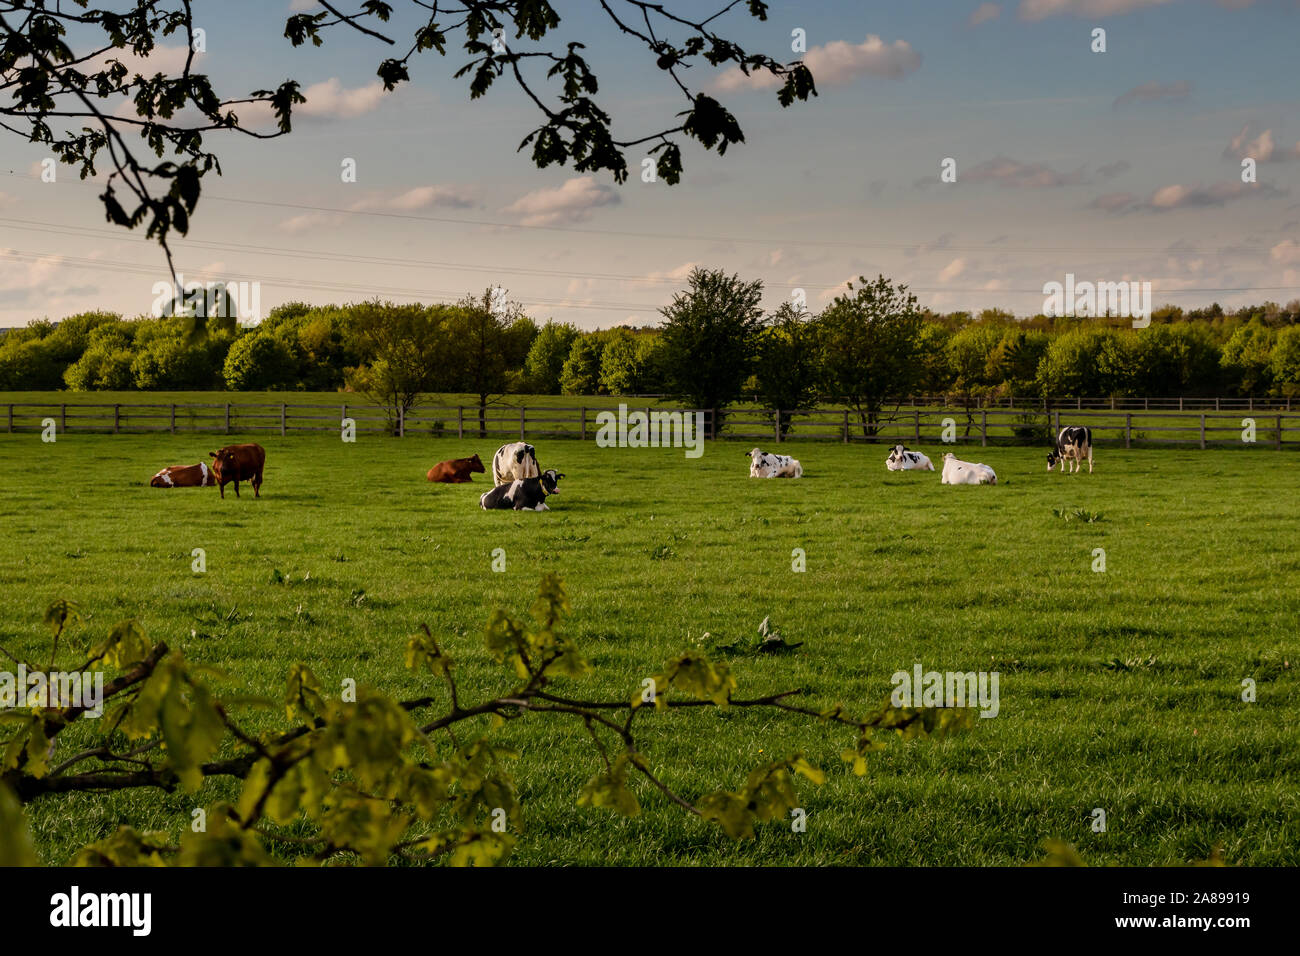 Verschieden farbige Kühe auf Wiese Stock Photo